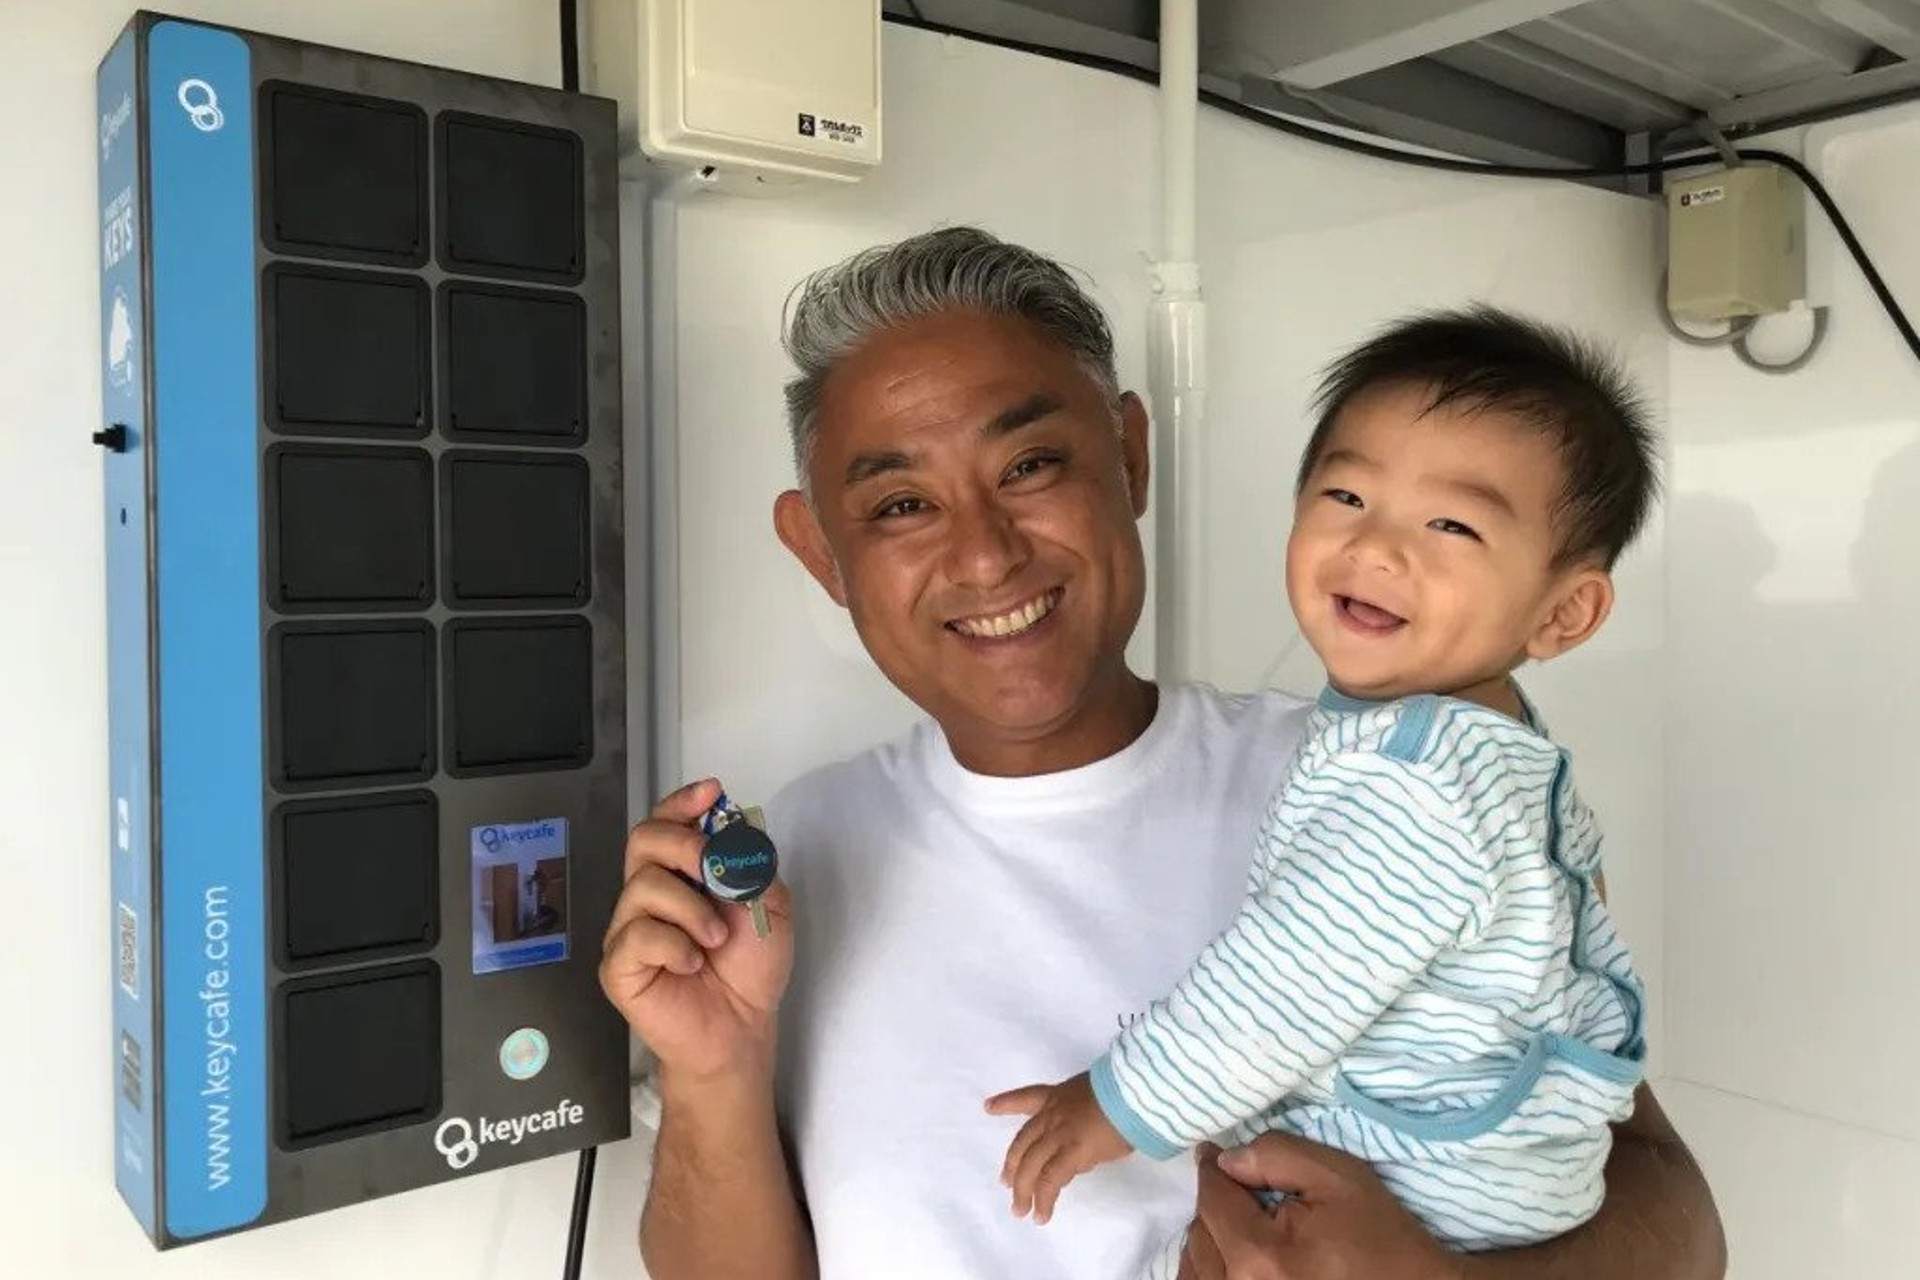 Uruma Dome em Okinawa usa Keycafe para check-ins de hóspedes